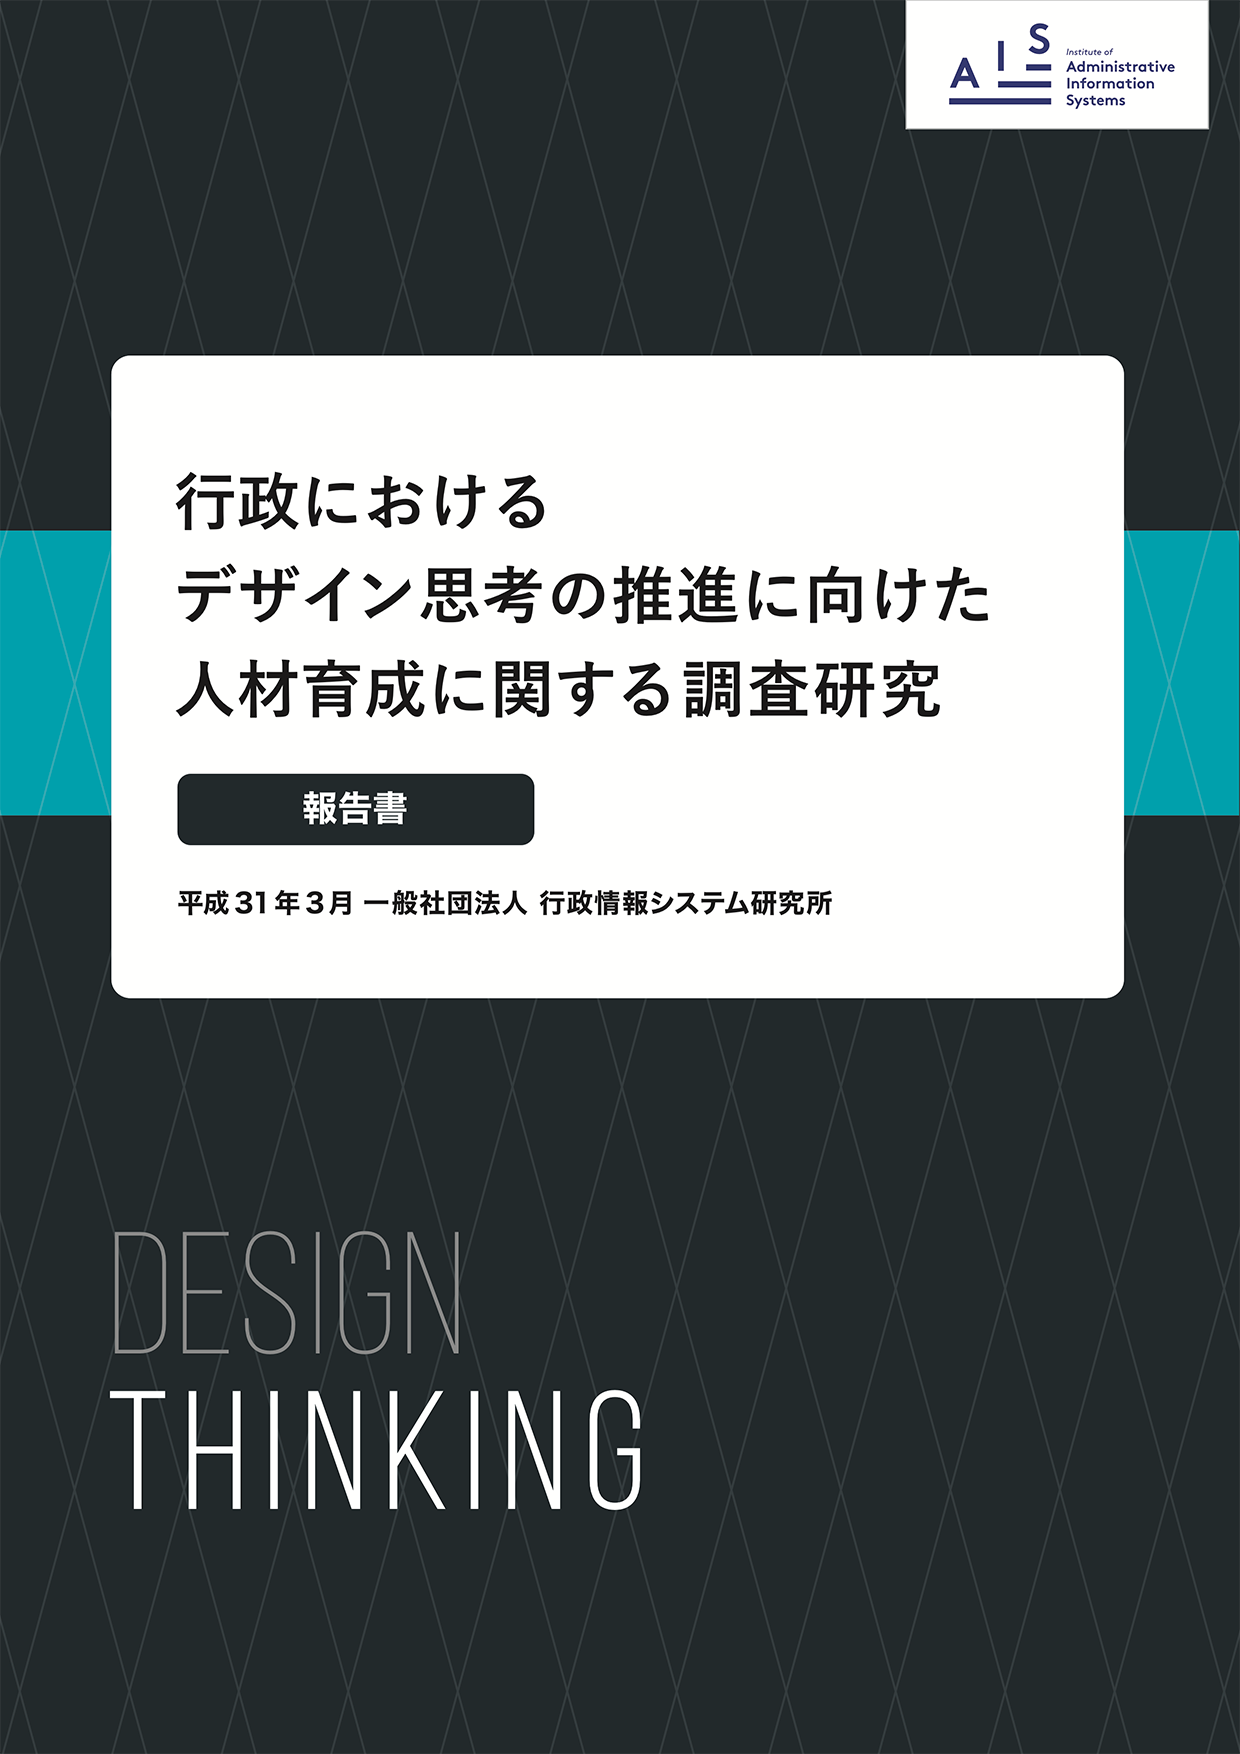 「行政におけるデザイン思考の推進に向けた人材育成に関する研究」の表紙イメージ